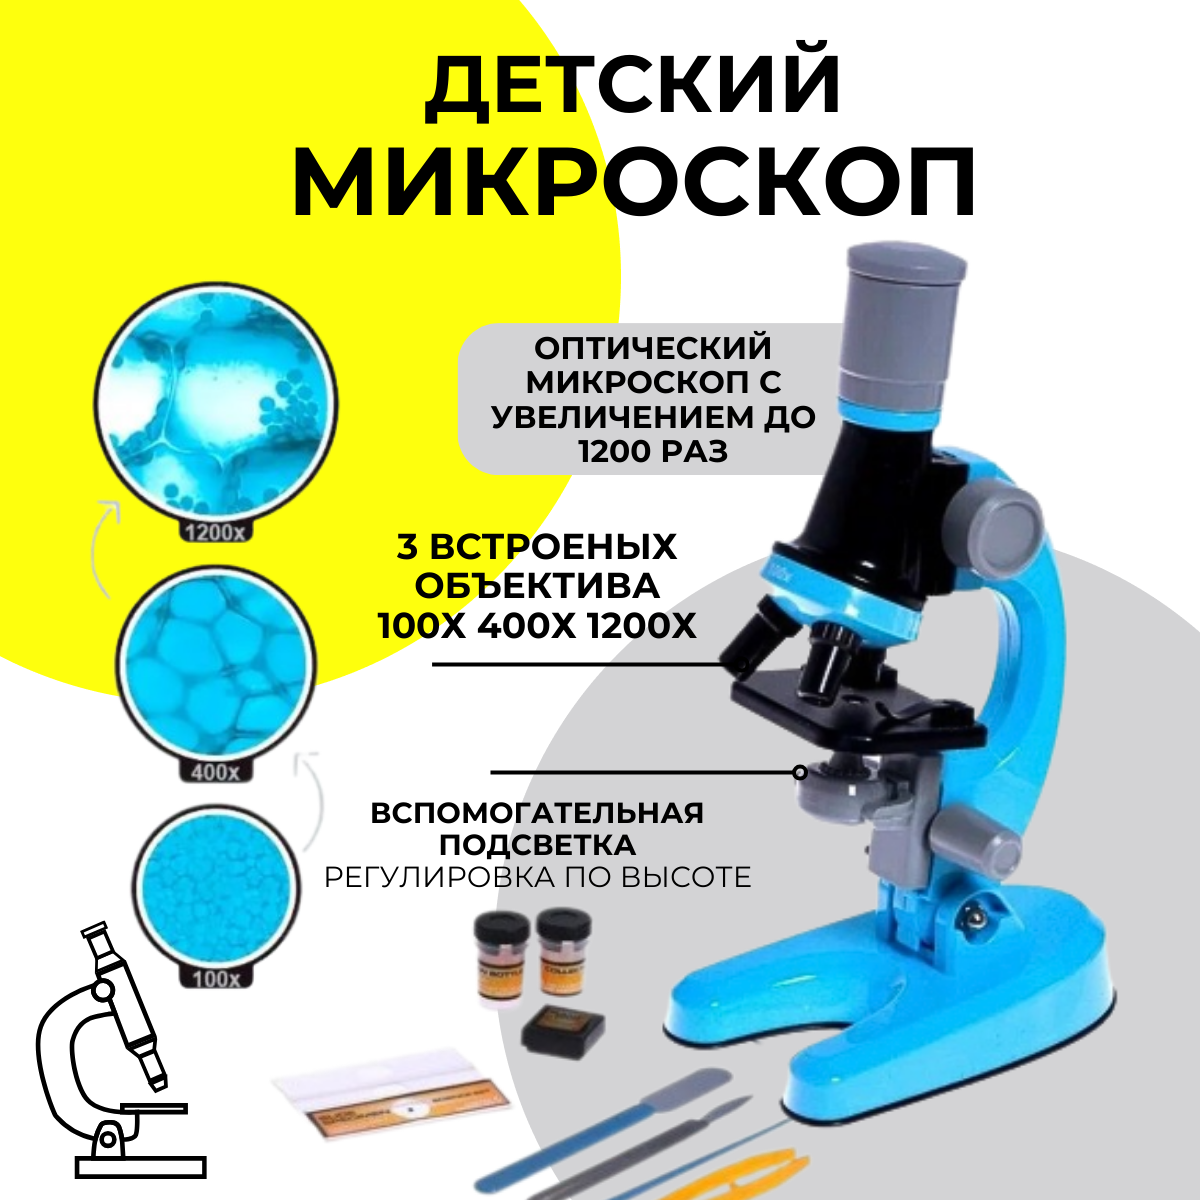 Микроскоп MKB4849708 детский Юный ботаник с подсветкой, кратность х100, х400, х1200 микроскоп детский юный ботаник кратность х100 х400 х1200 голубой подсветка